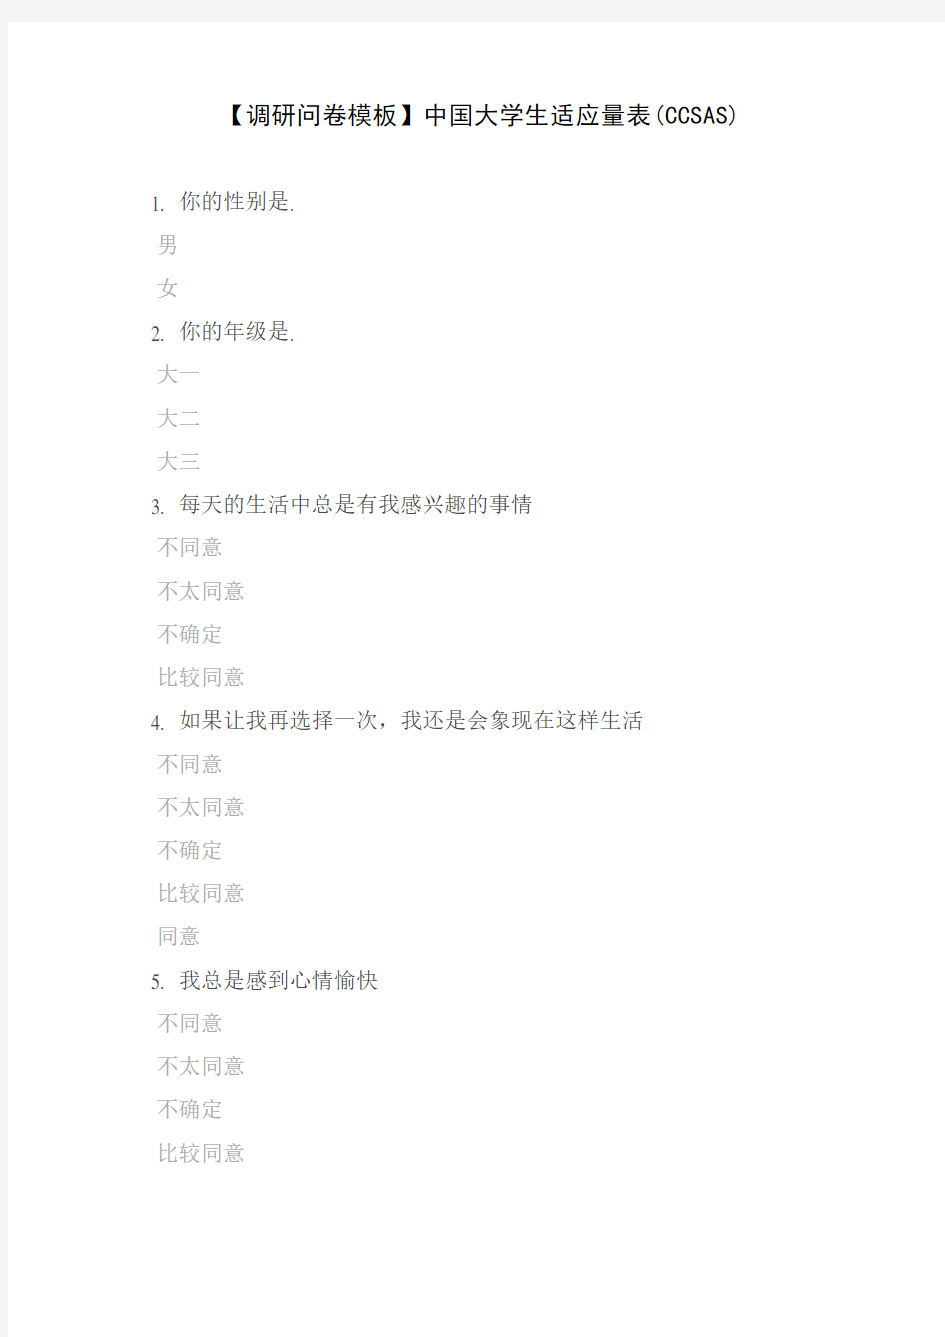 【调研问卷模板】中国大学生适应量表(CCSAS)